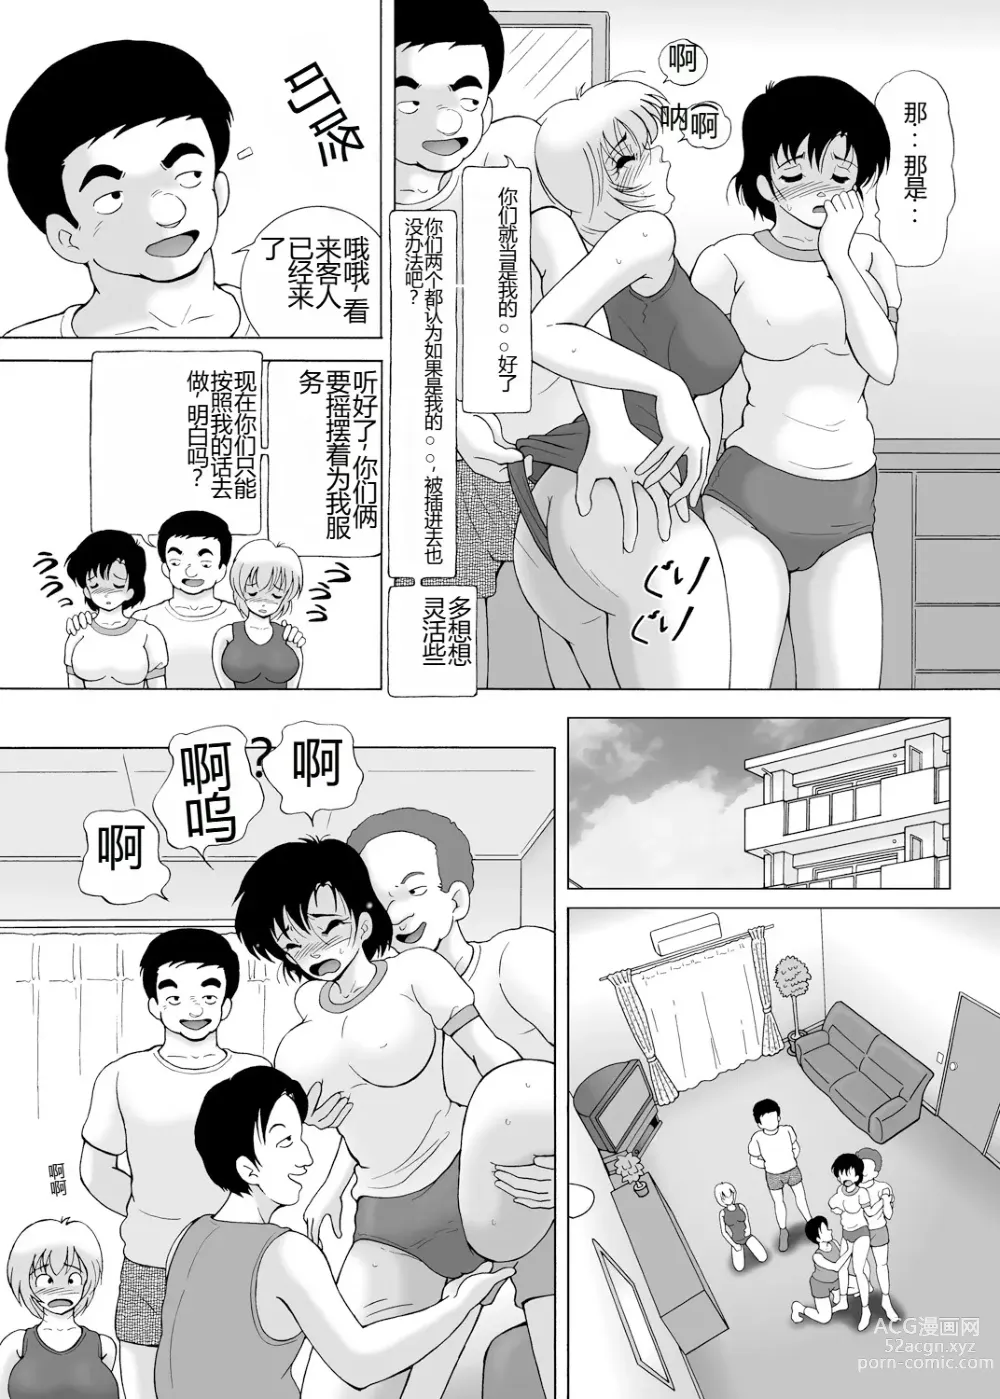 Page 135 of manga Yachin Tainou Bijin Shimai Kyousei Nikutai Harai